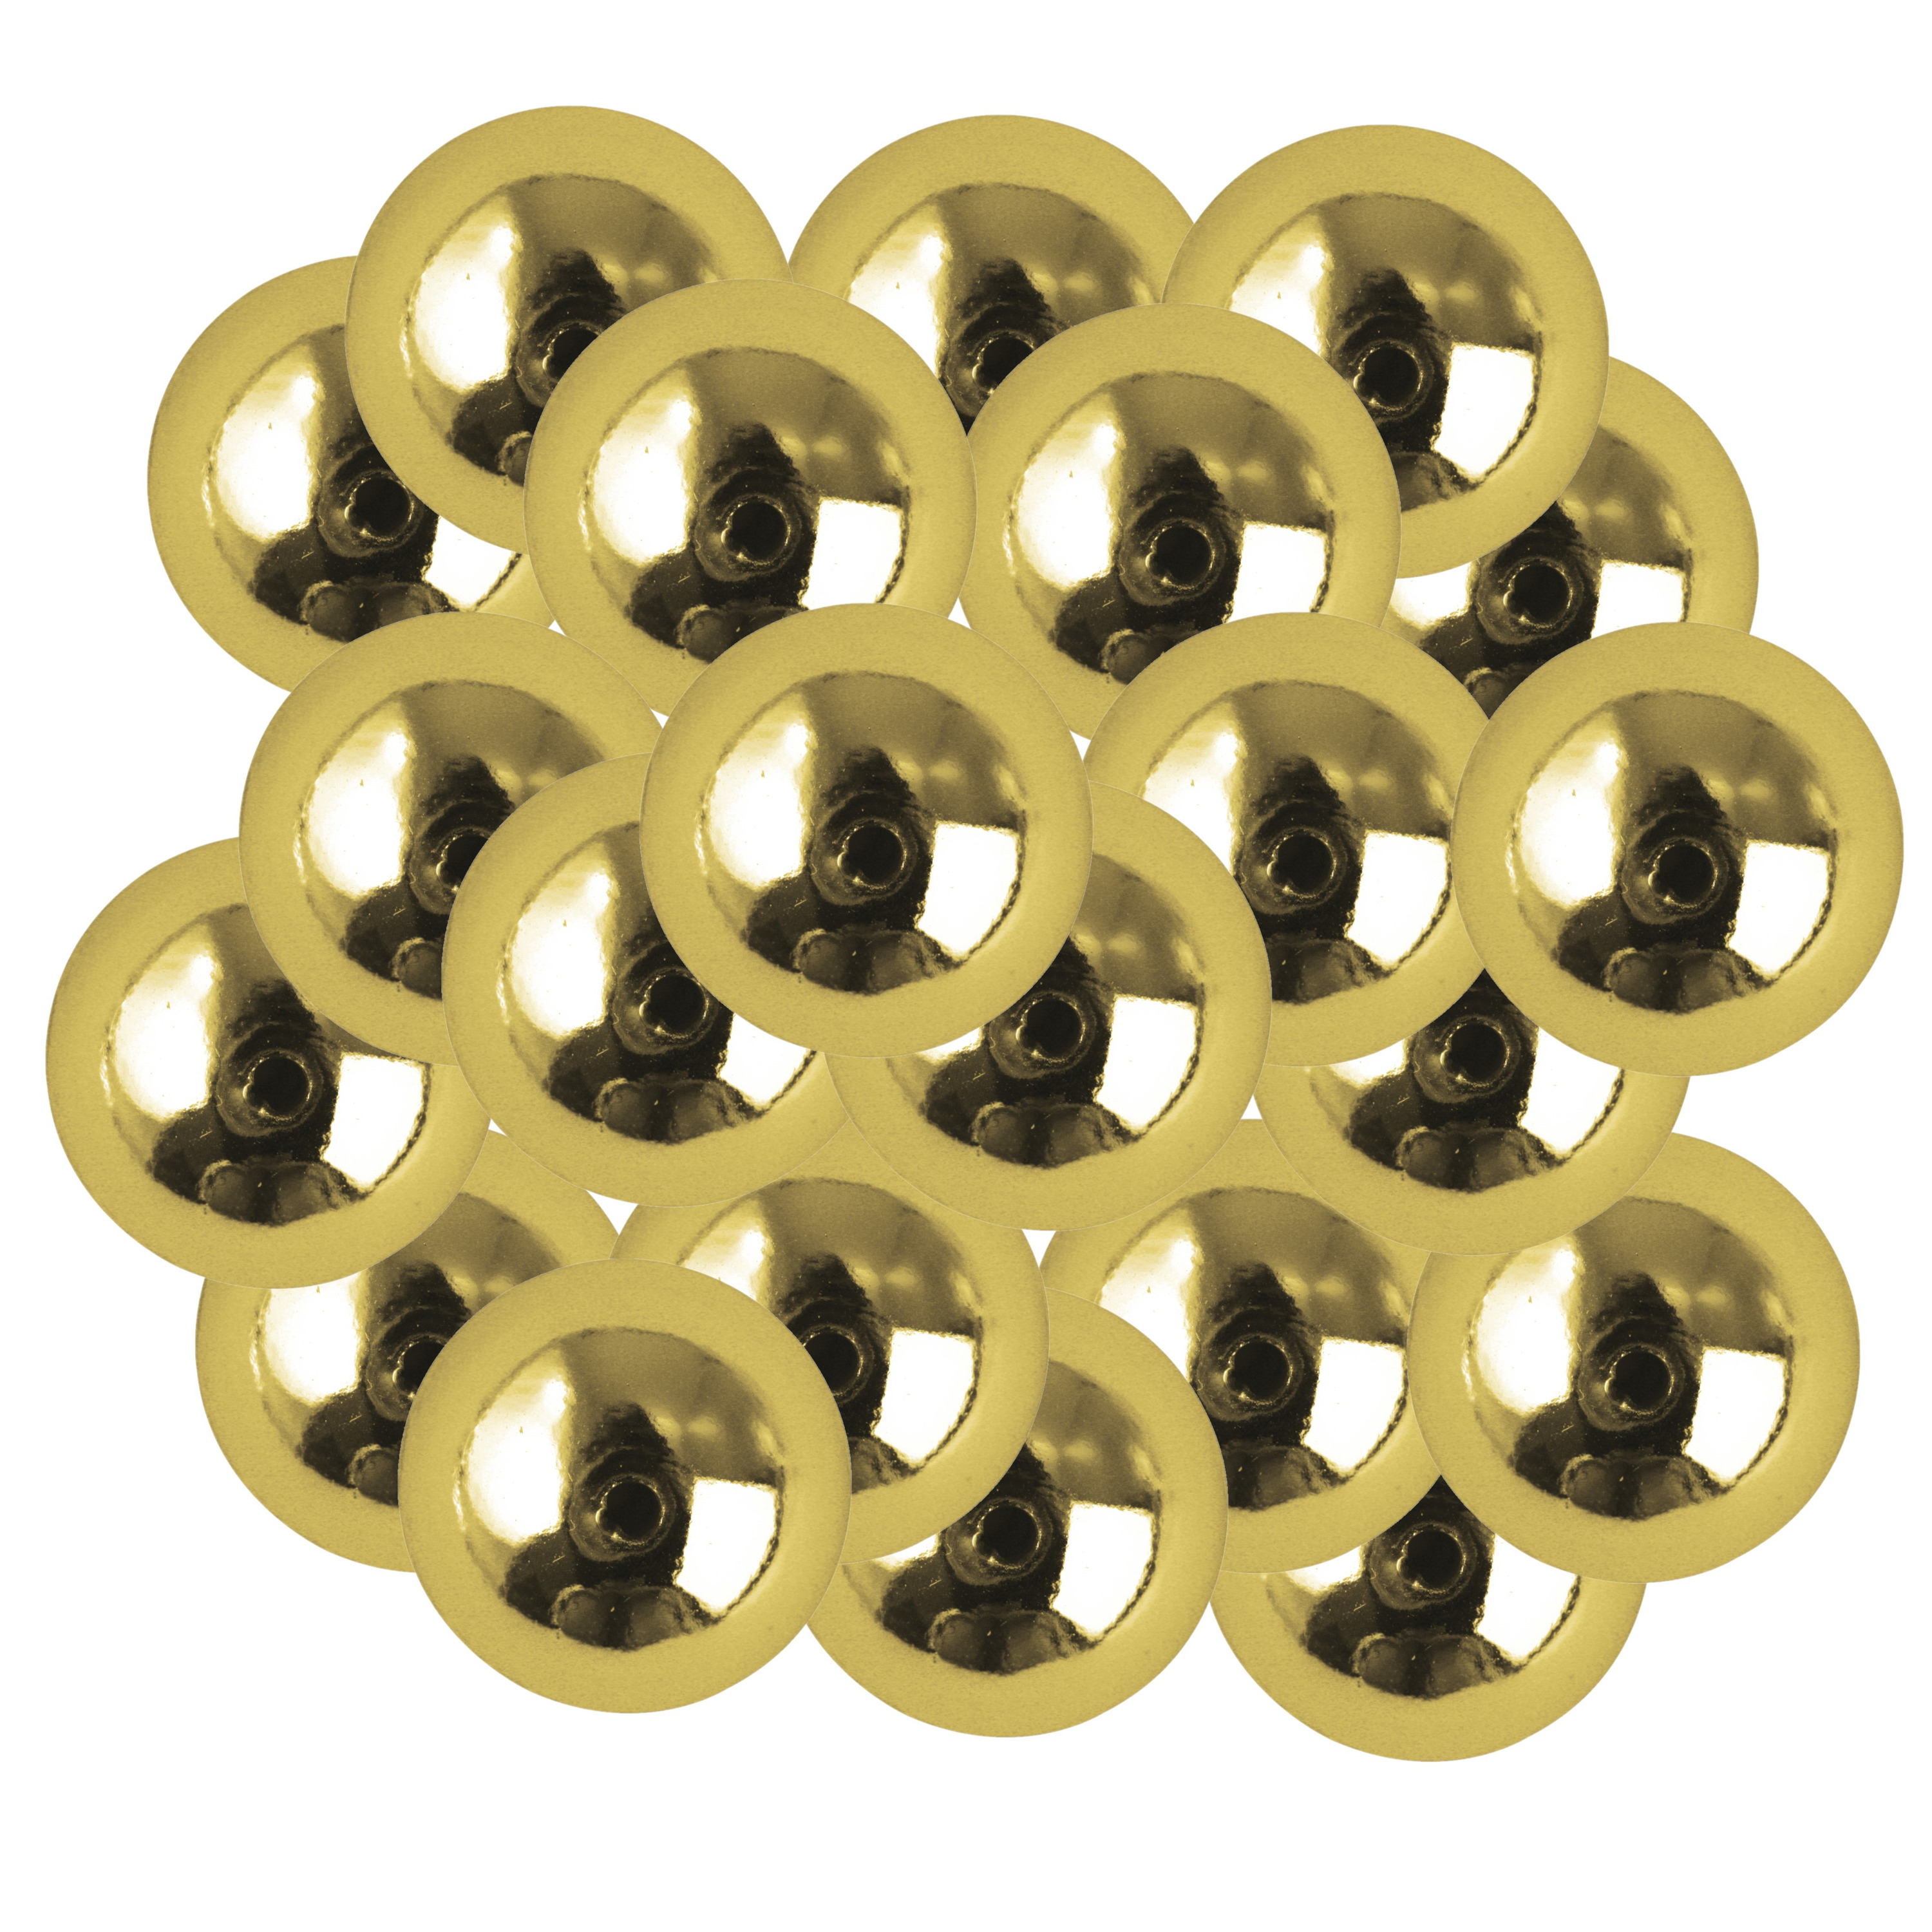 66x stuks gouden plastic hobby kralen van 10 mm